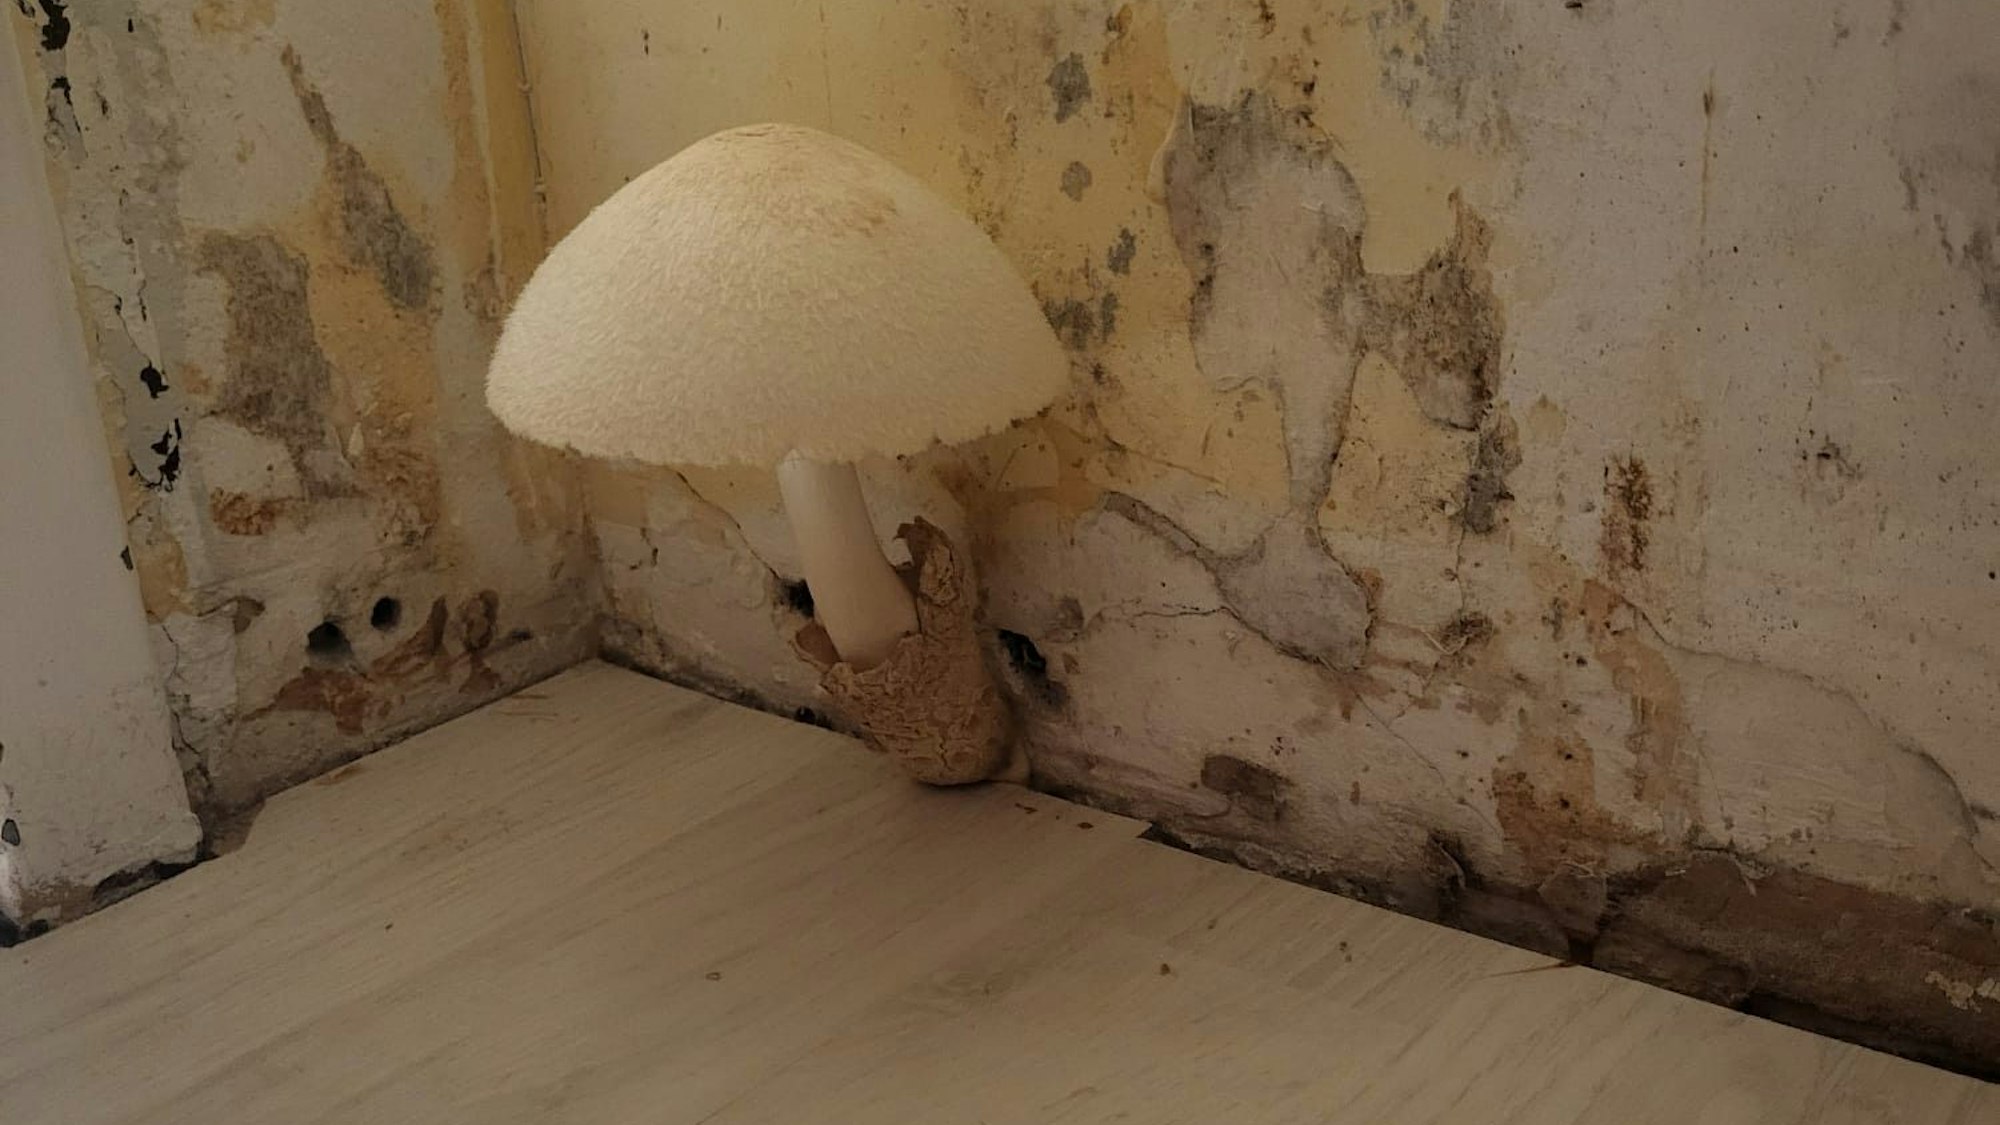 Ein Pilz wächst aus der Wand.